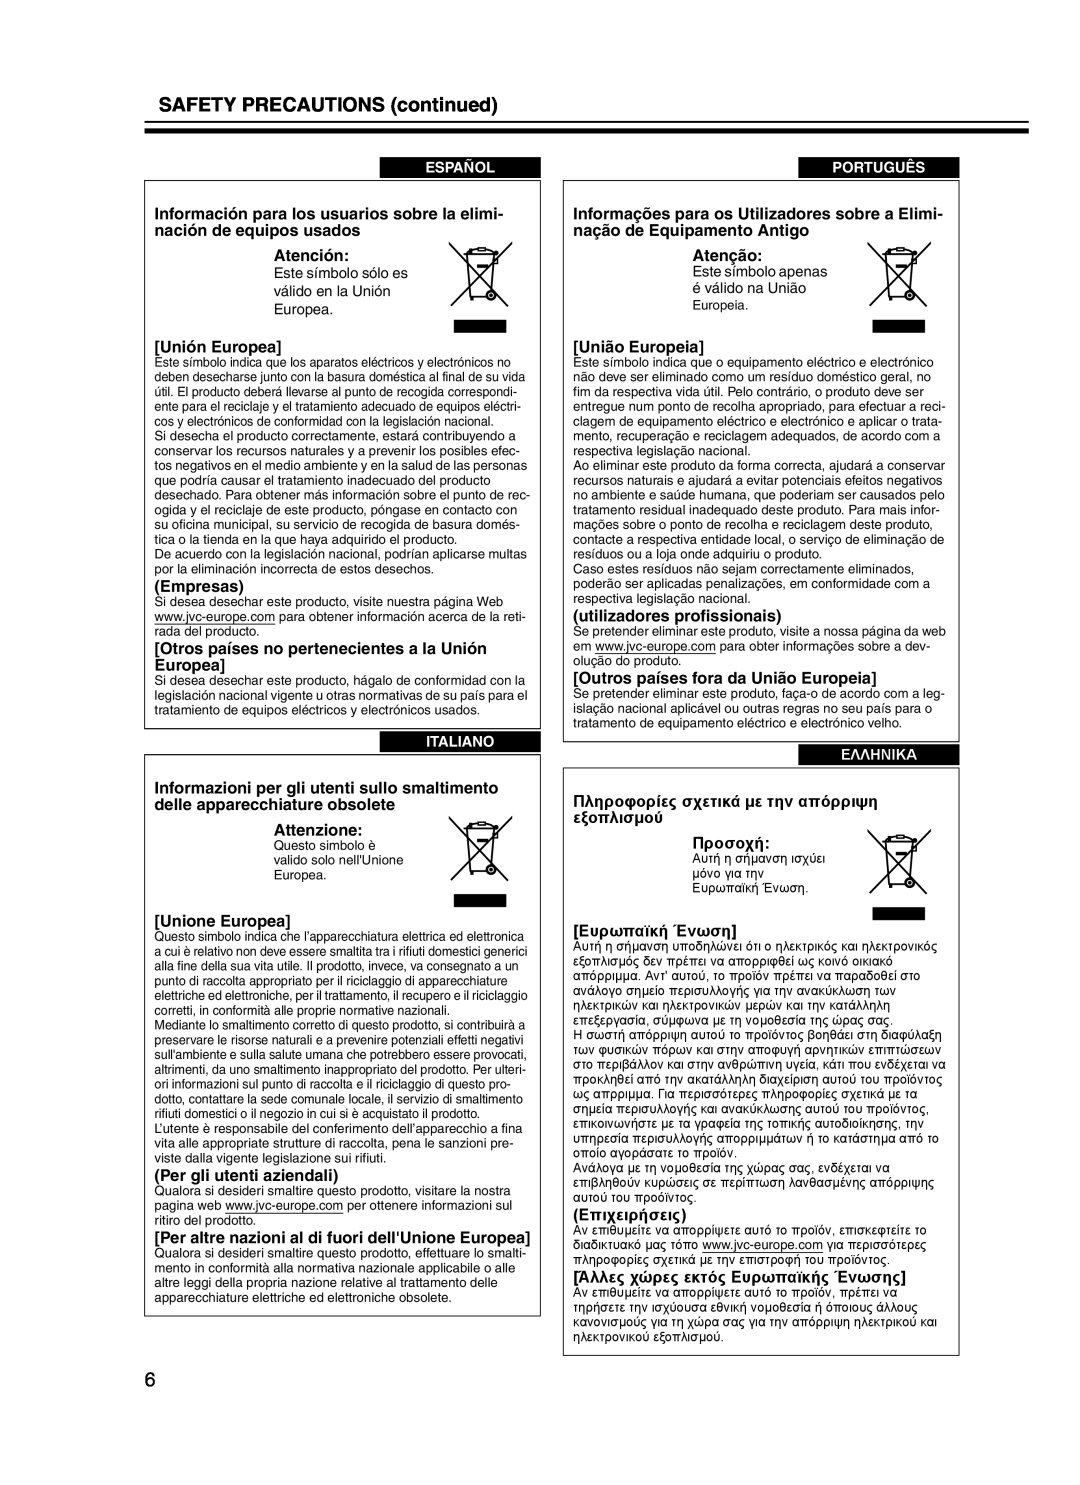 JVC DLA-HD10KU/E, DLA-HD10KSU/E manual Πληροφορίες σχετικά µε την απόρριψη εξοπλισµού Προσοχή, Ευρωπαϊκή Ένωση, Επιχειρήσεις 